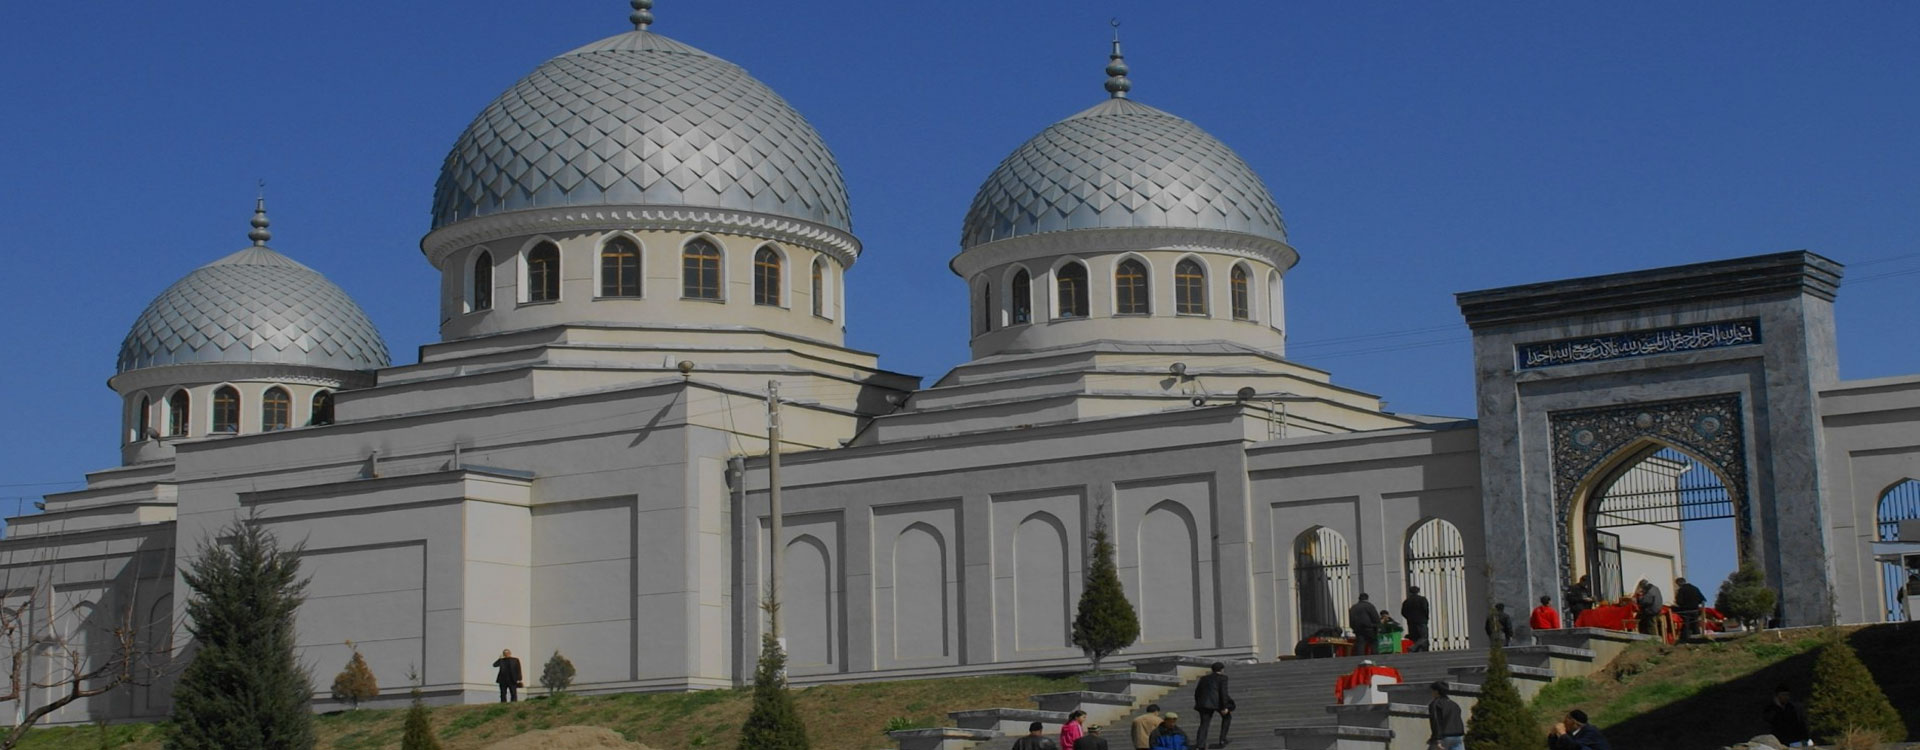 tashkent-euroasia-travels